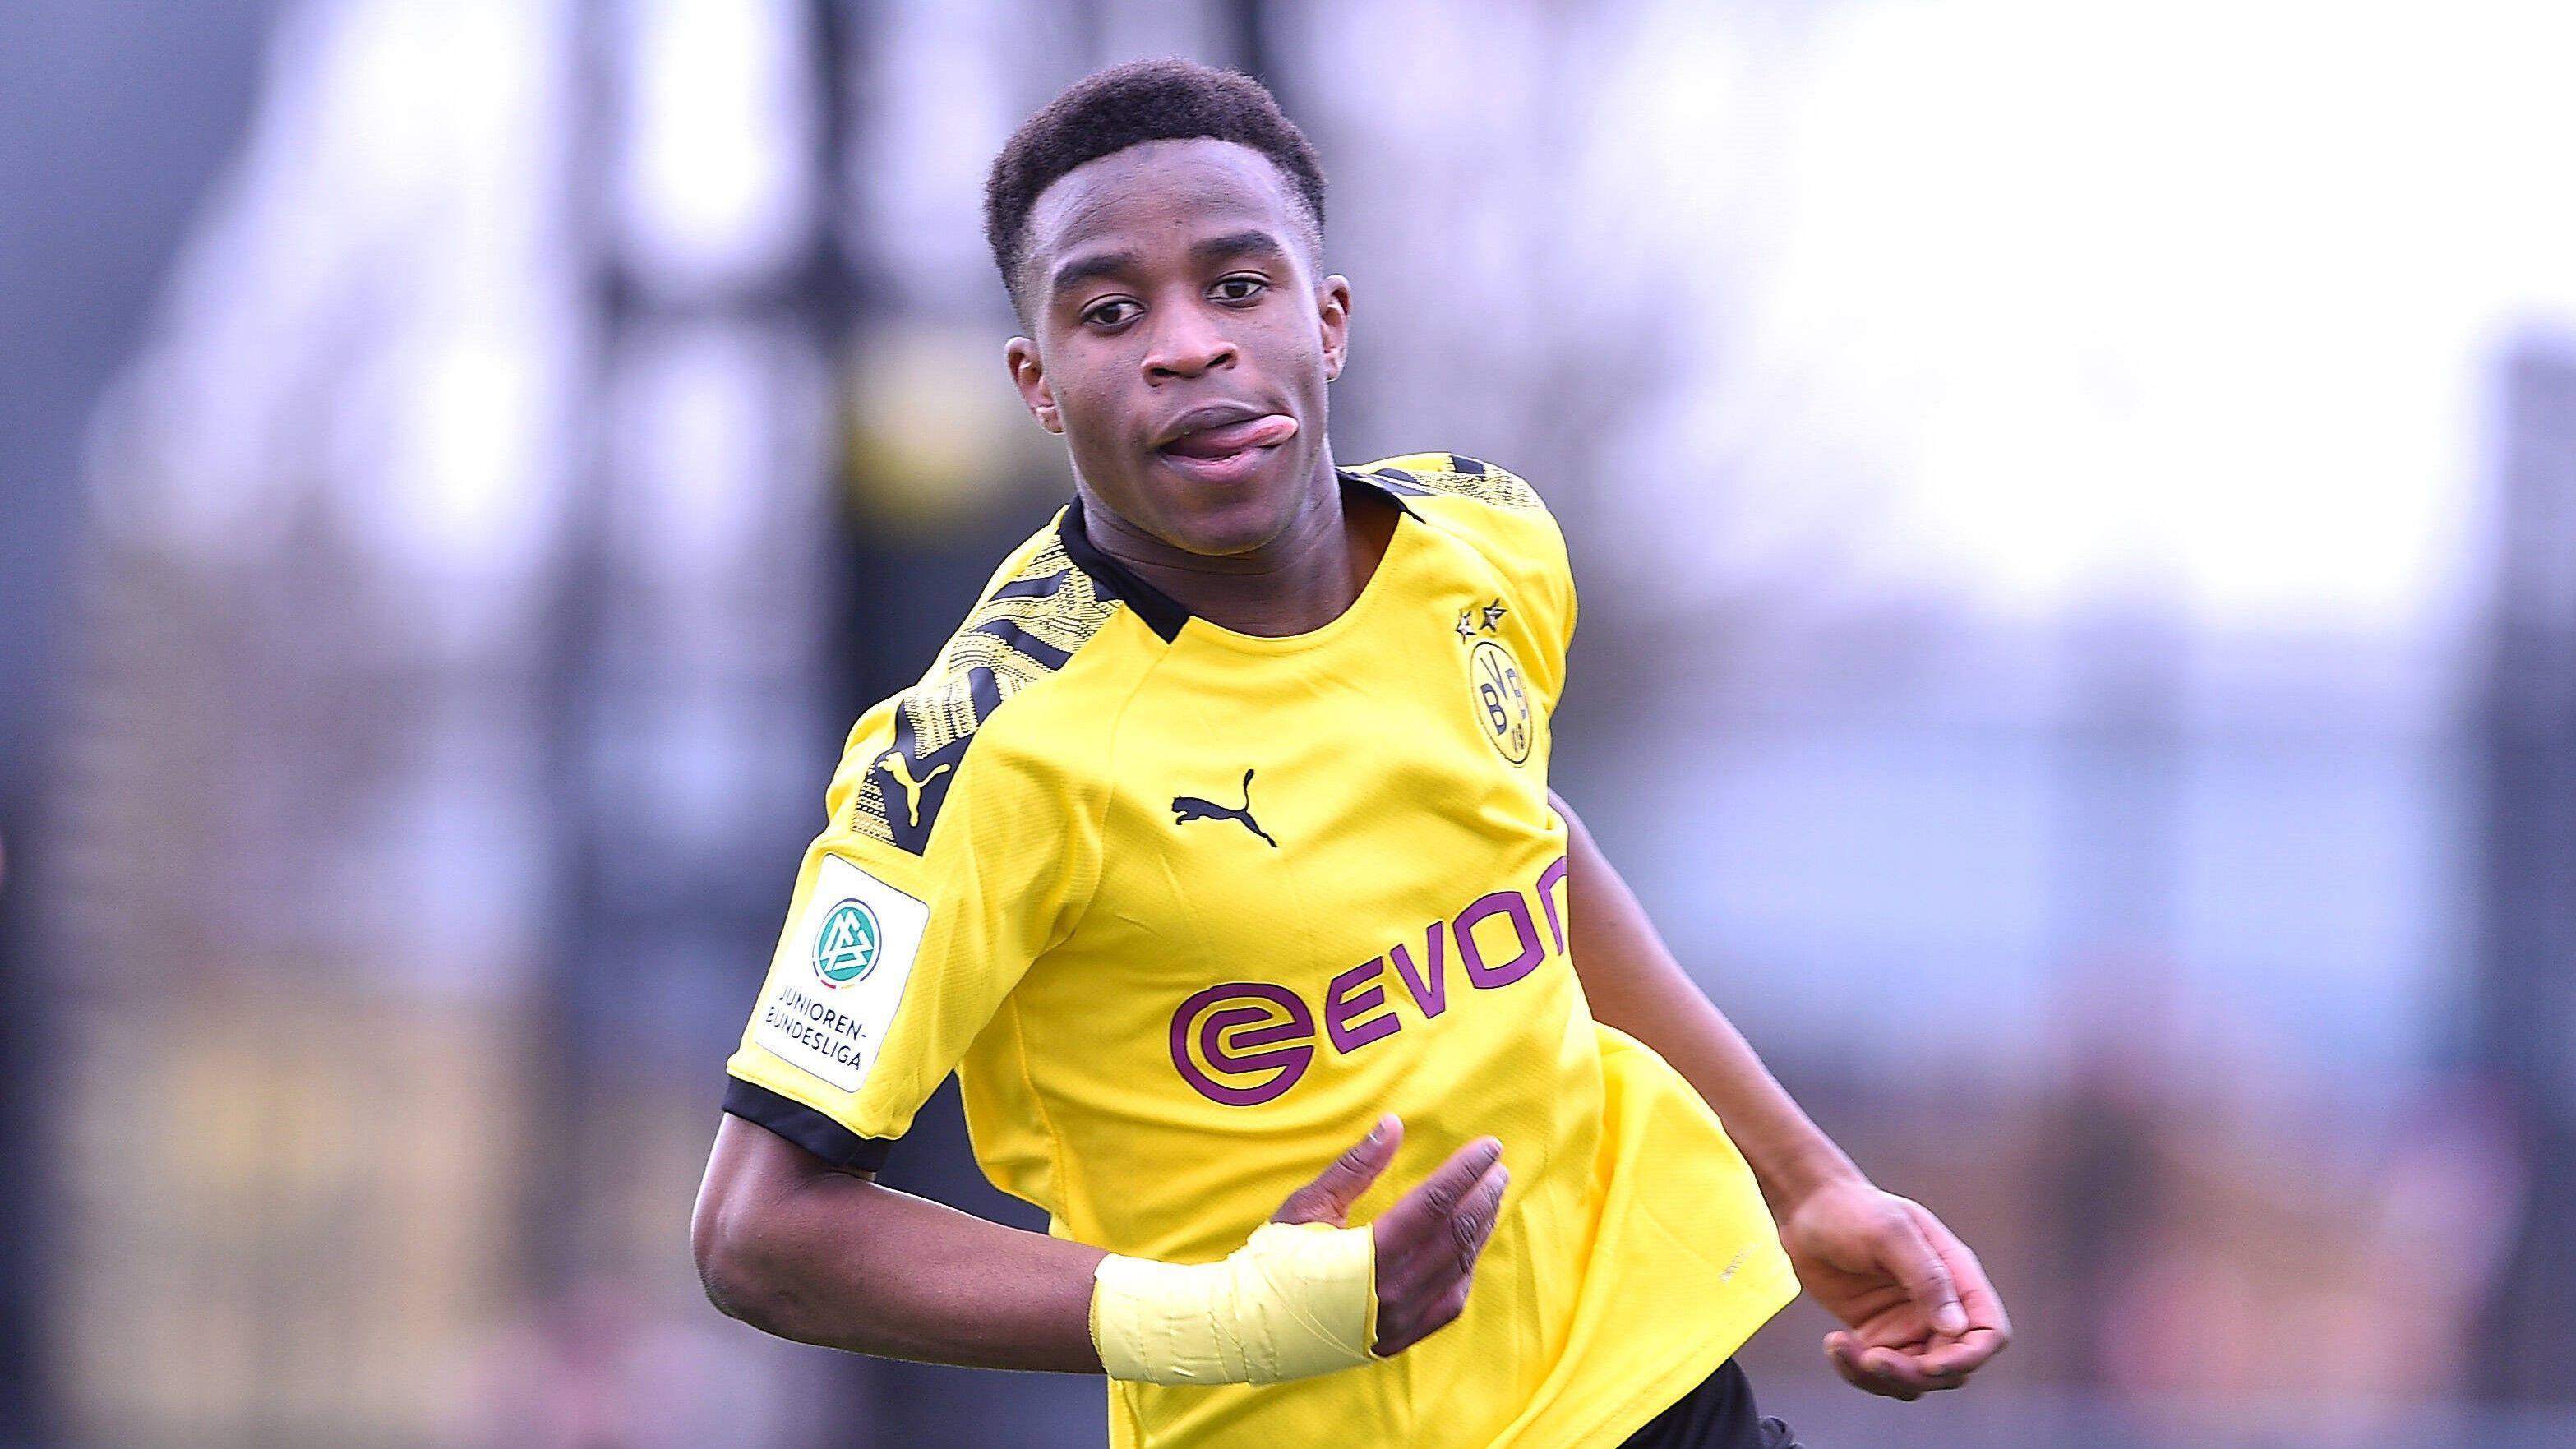 
                <strong>Yousoufa Moukoko</strong><br>
                Als Borussia Dortmund den Antrag auf Alters-Herabsetzung gestellt hat, haben die Verantwortlichen vor allem an Youssoufa Moukoko gedacht. Der Angreifer ist der berühmteste 15-Jährige in der deutschen Fußballwelt. Ende November feiert Moukoko seinen 16. Geburtstag. Dass er seinem Alter fußballerisch voraus ist, hat er in dieser Saison unter anderem in der A-Jugend-Bundesliga West gezeigt. In 20 Spielen schoss er 34 Tore - in einer Liga, in der das Durchschnittsalter 18,4 Jahre beträgt. Es scheint nur eine Frage der Zeit zu sein, dass er Nuri Sahin als jüngsten Bundesliga-Debütanten ablöst. 
              